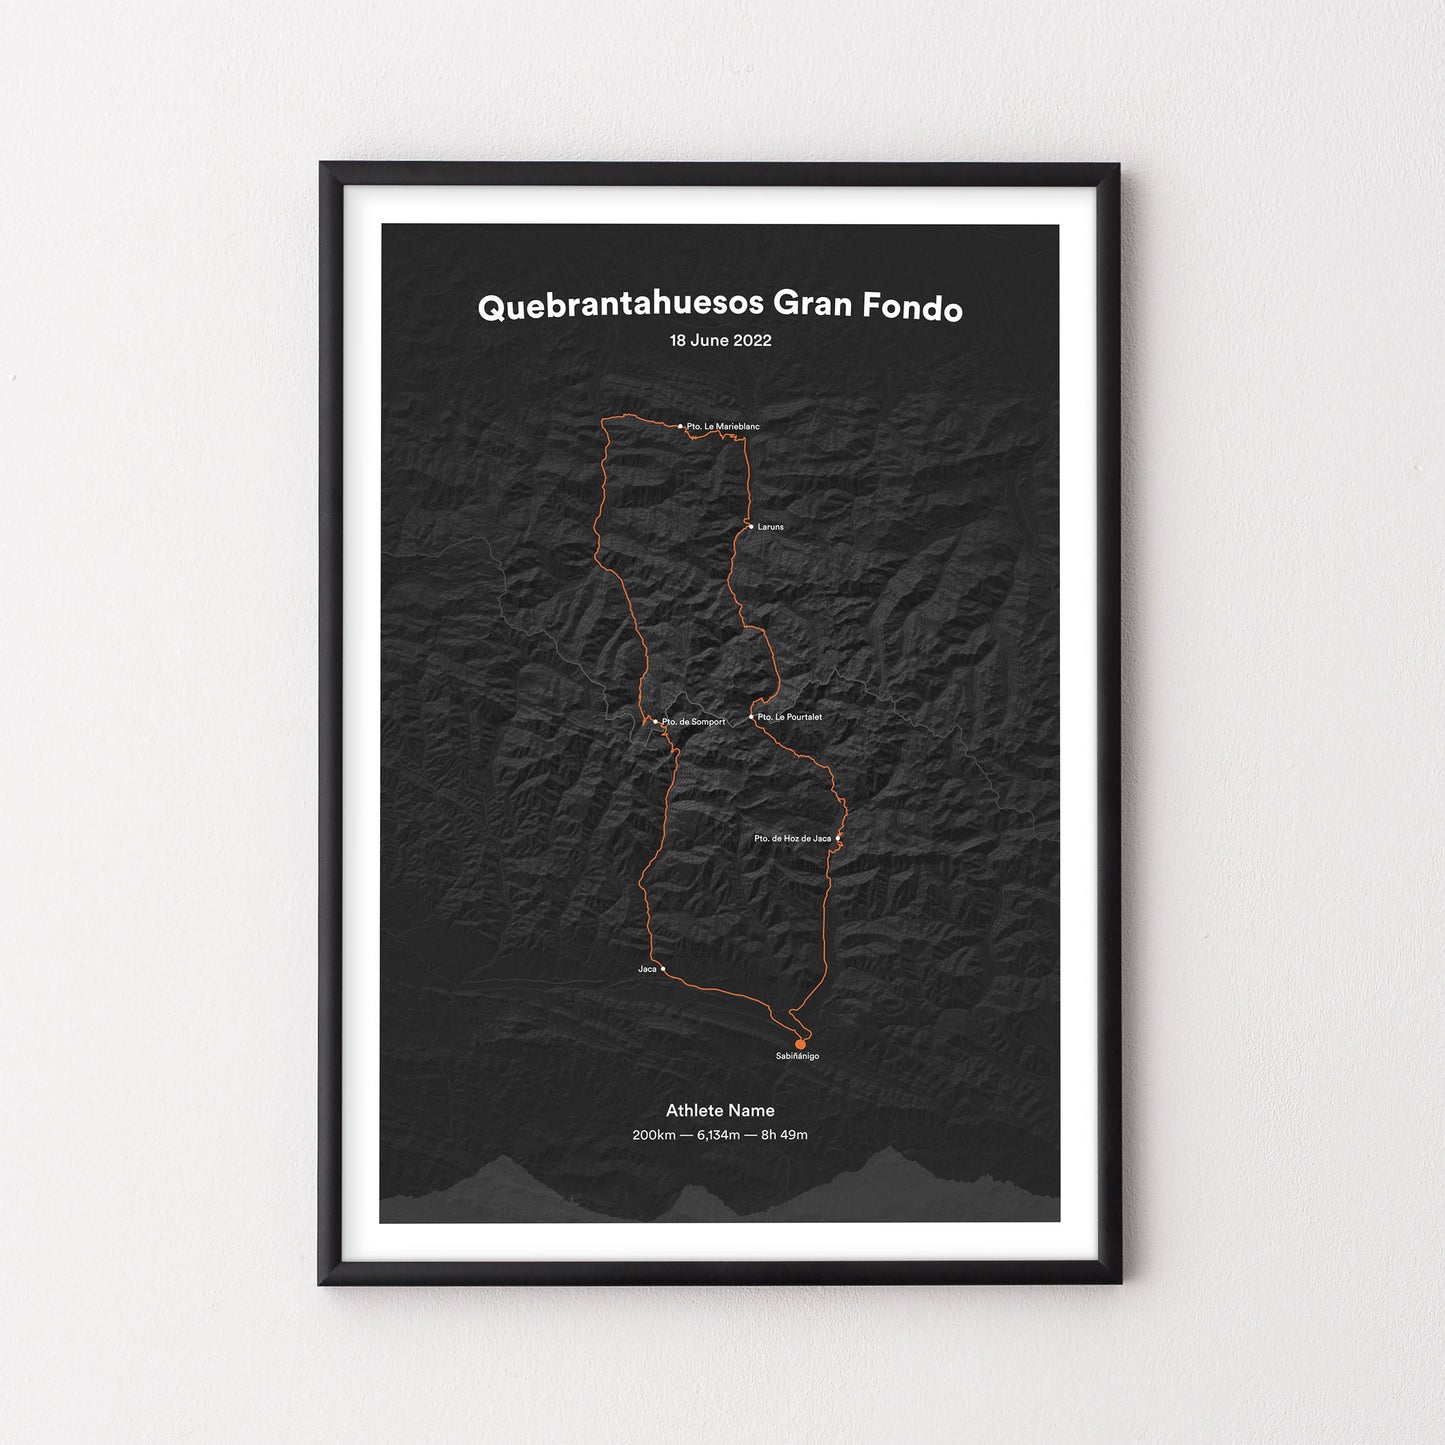 Quebrantahuesos Gran Fondo - Poster - The English Cyclist